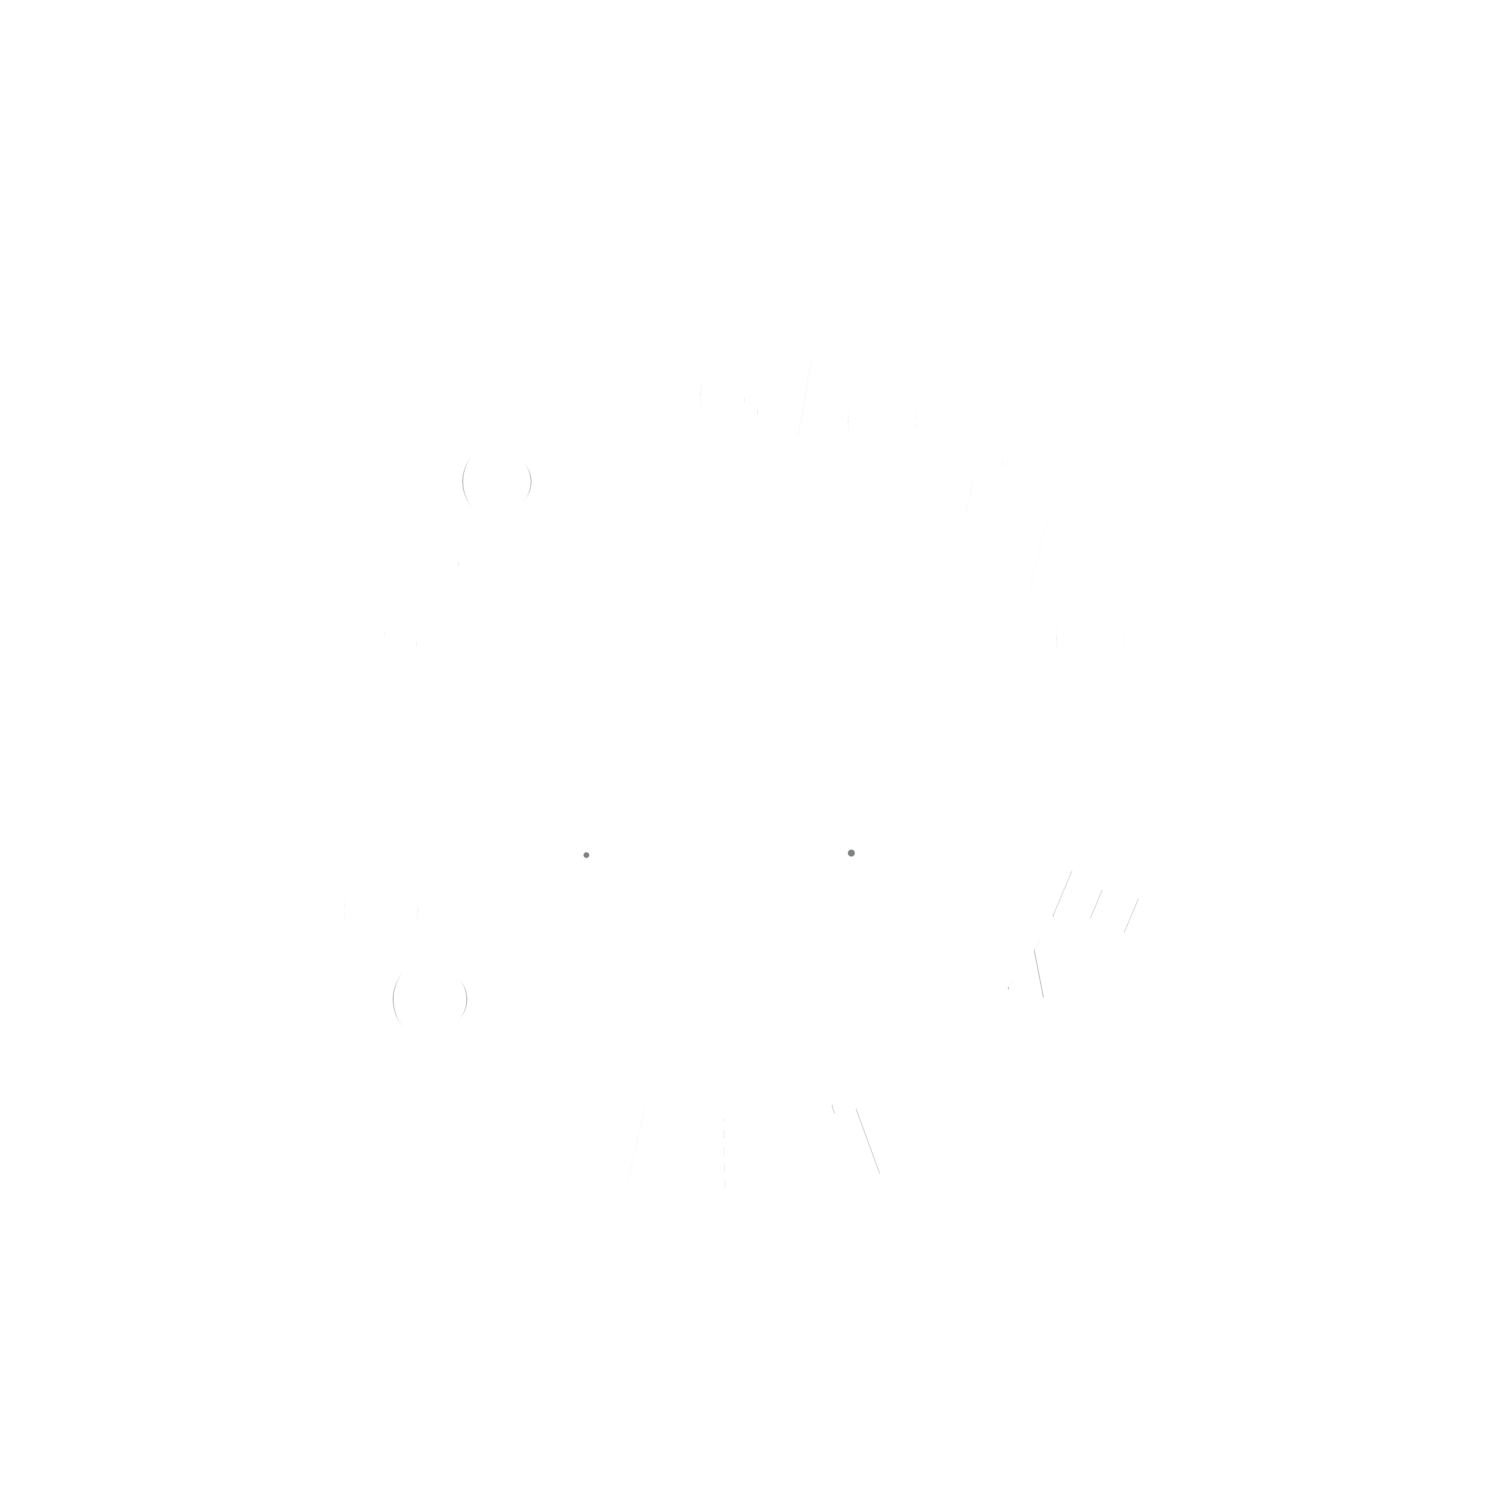 Buon Giorno Coffee Trike